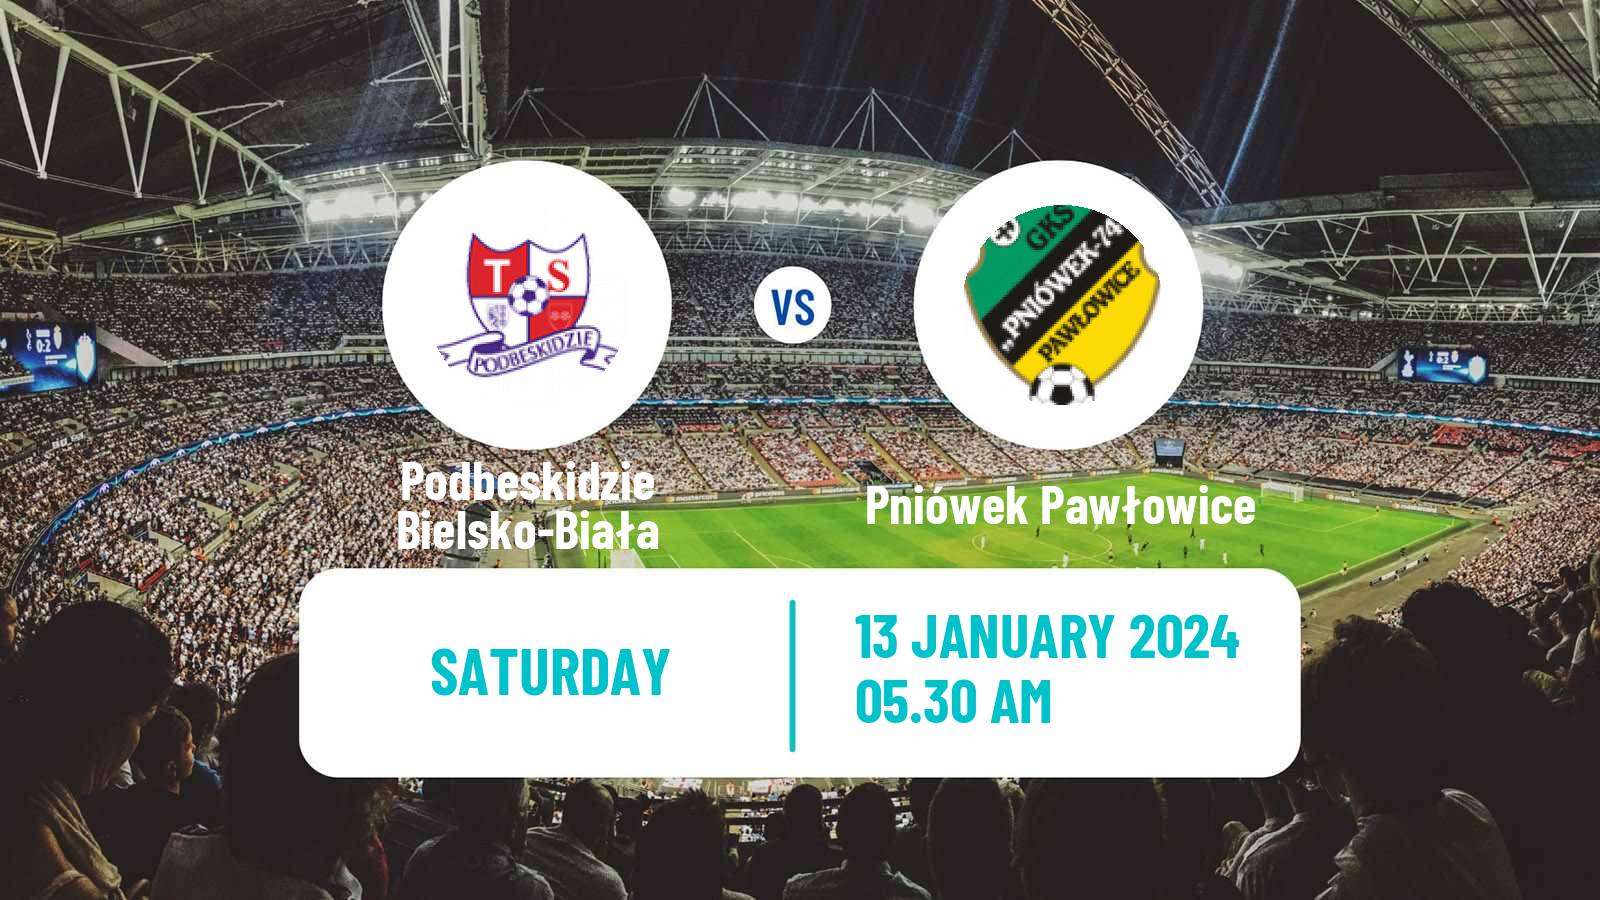 Soccer Club Friendly Podbeskidzie Bielsko-Biała - Pniówek Pawłowice